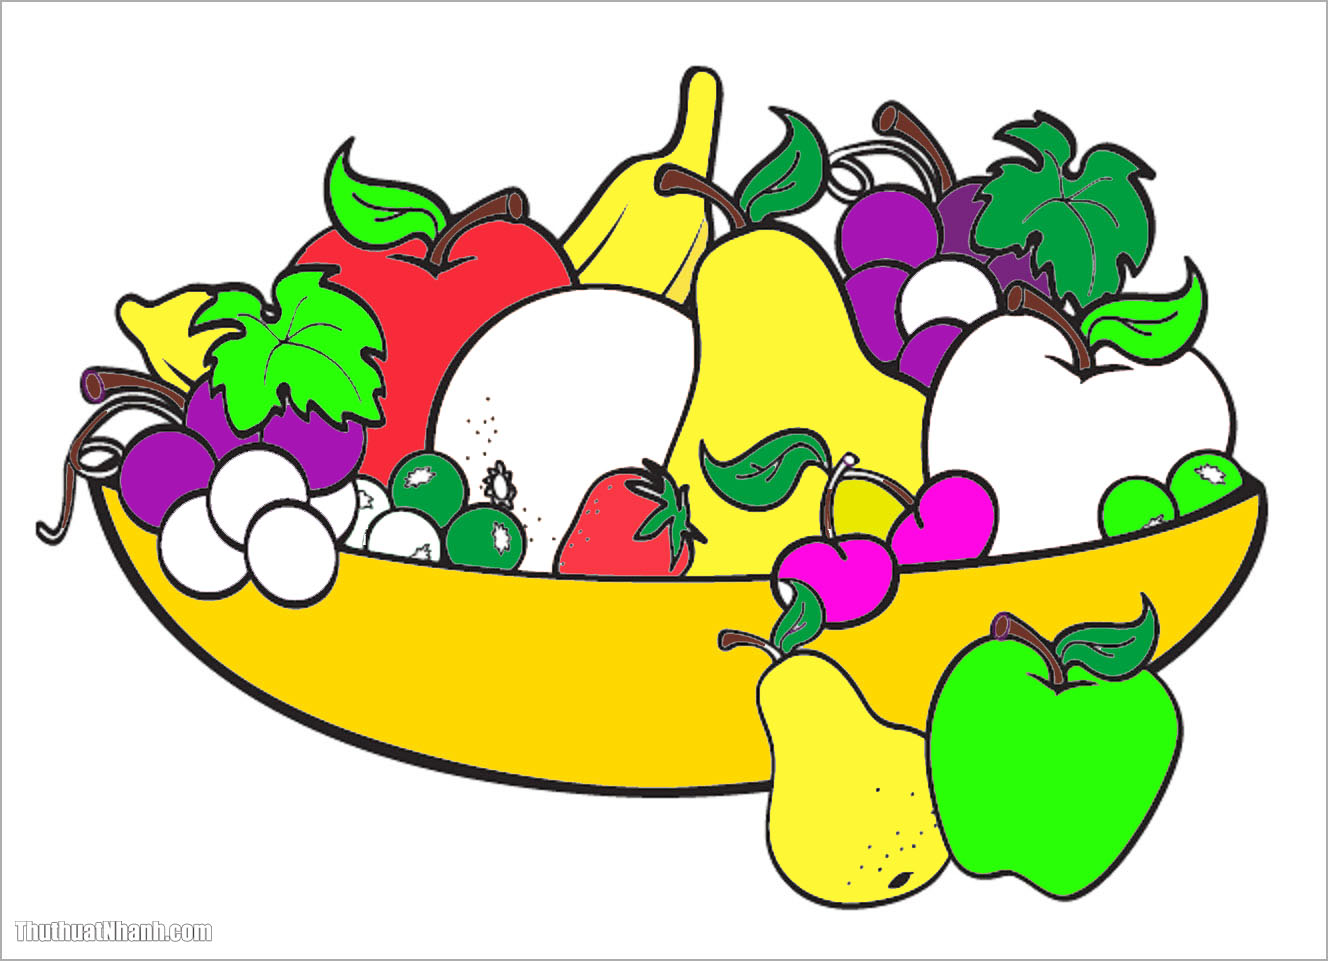 Xem hơn 100 ảnh về hình vẽ các loại trái cây  daotaonec